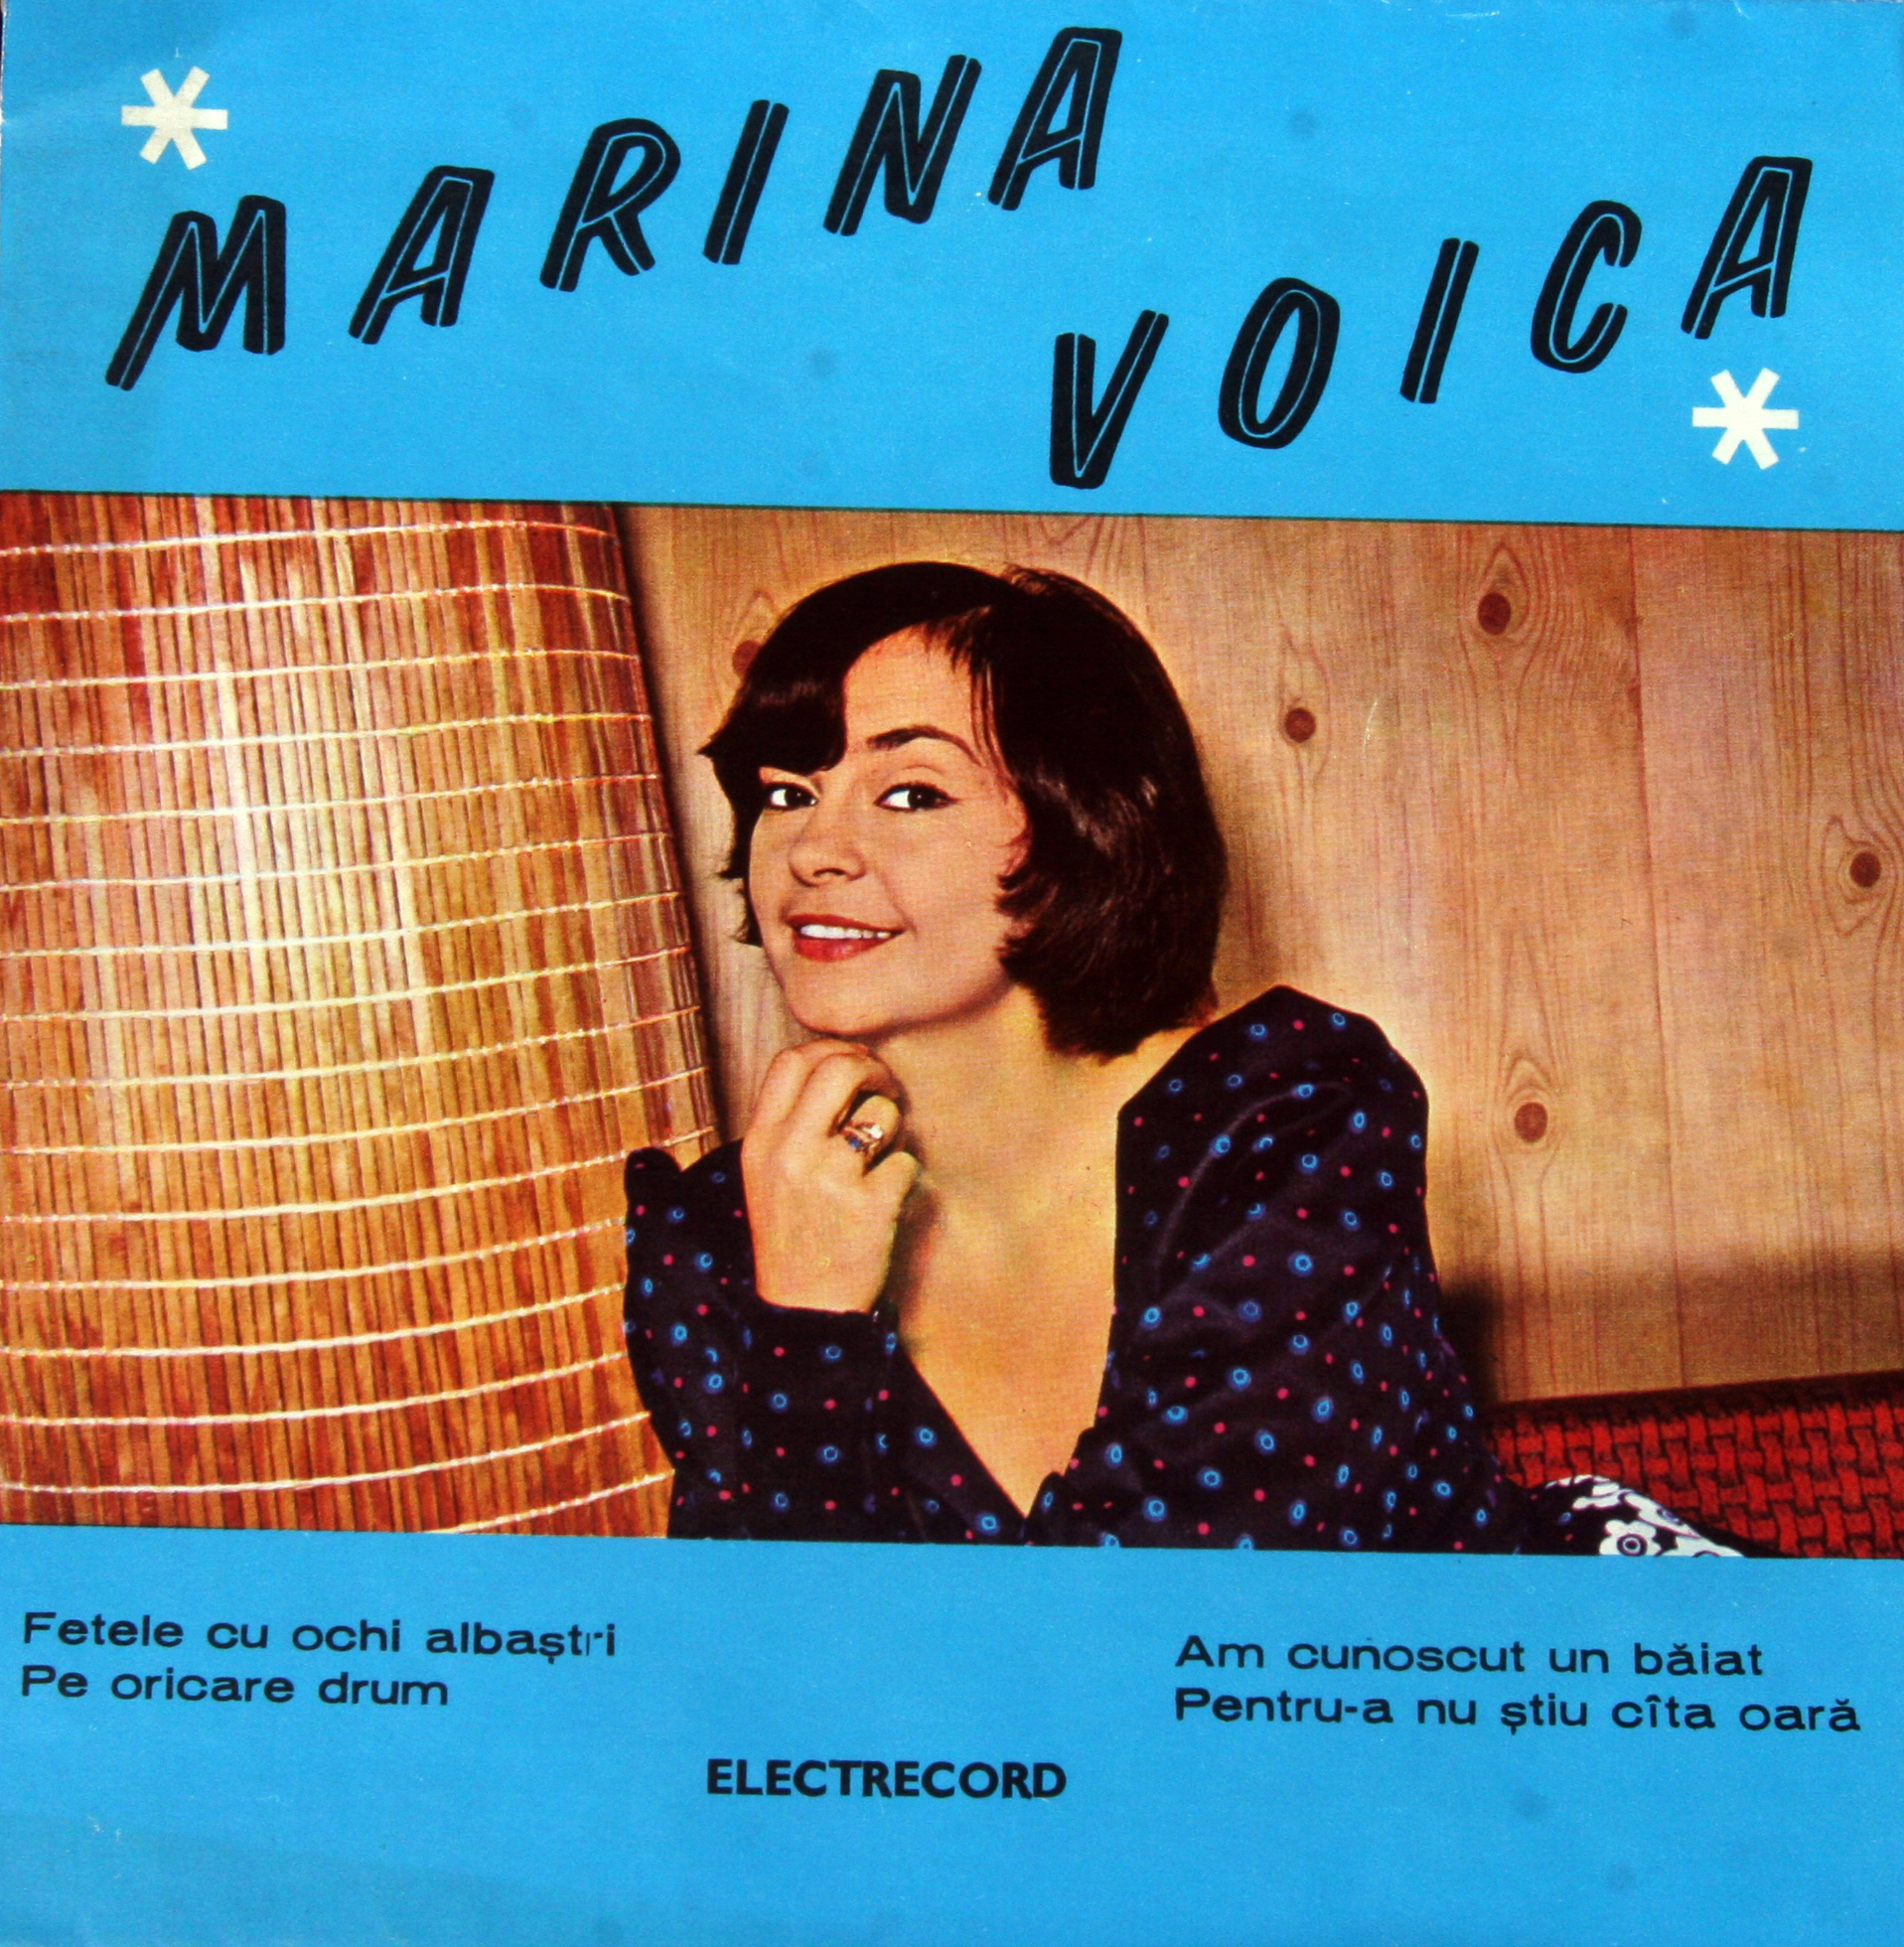 Marina Voica